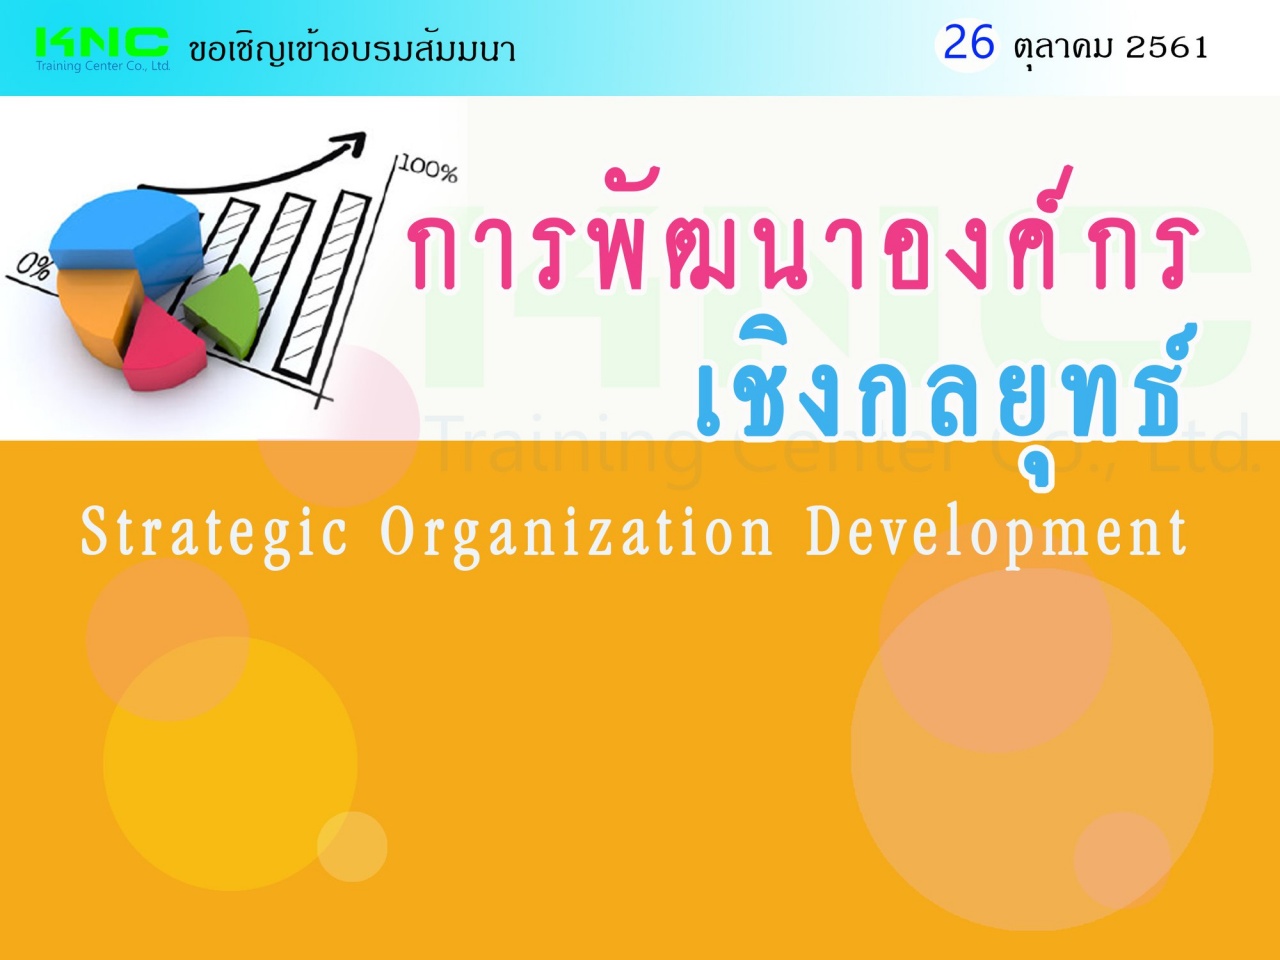 การพัฒนาองค์กรเชิงกลยุทธ์ (Strategic Organization Development)